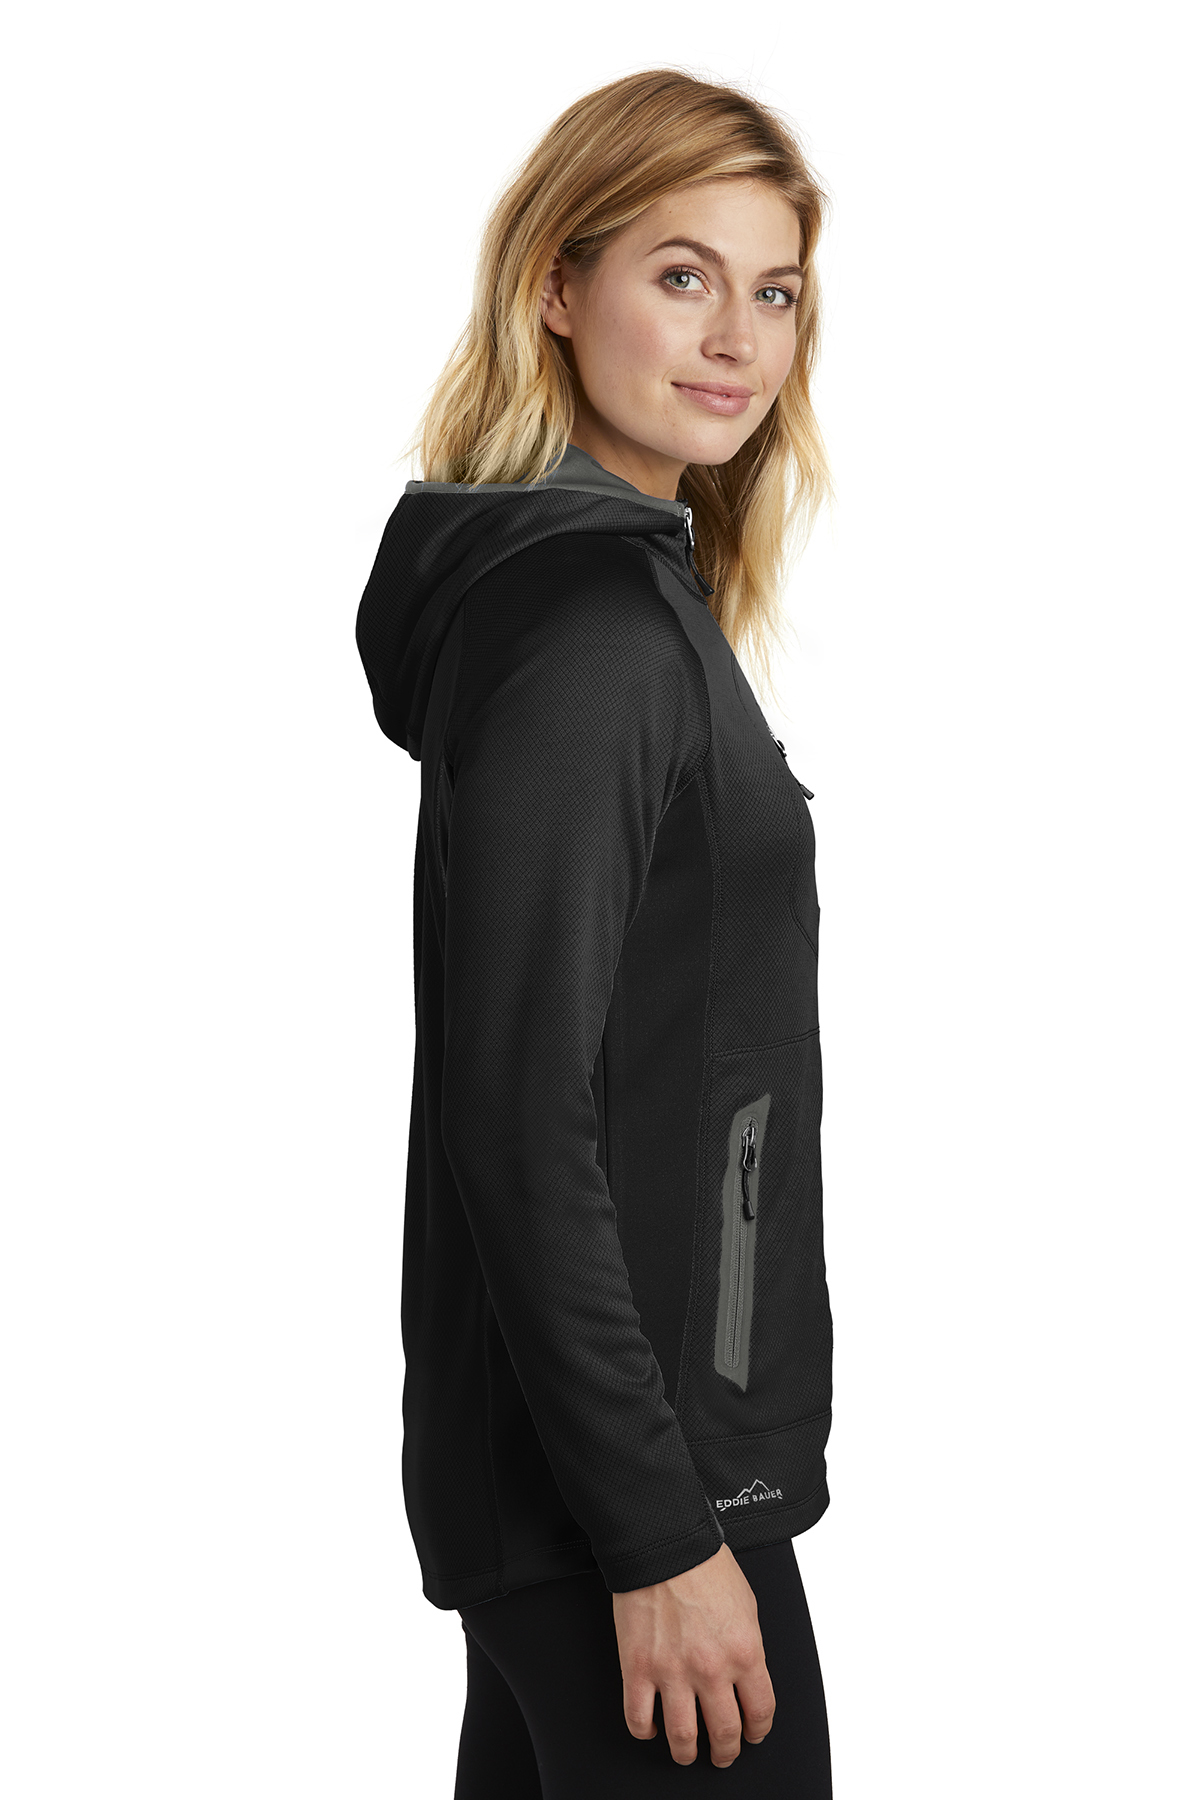 Eddie Bauer Ladies Sport Hooded Full-Zip Fleece Jacket | Product | SanMar